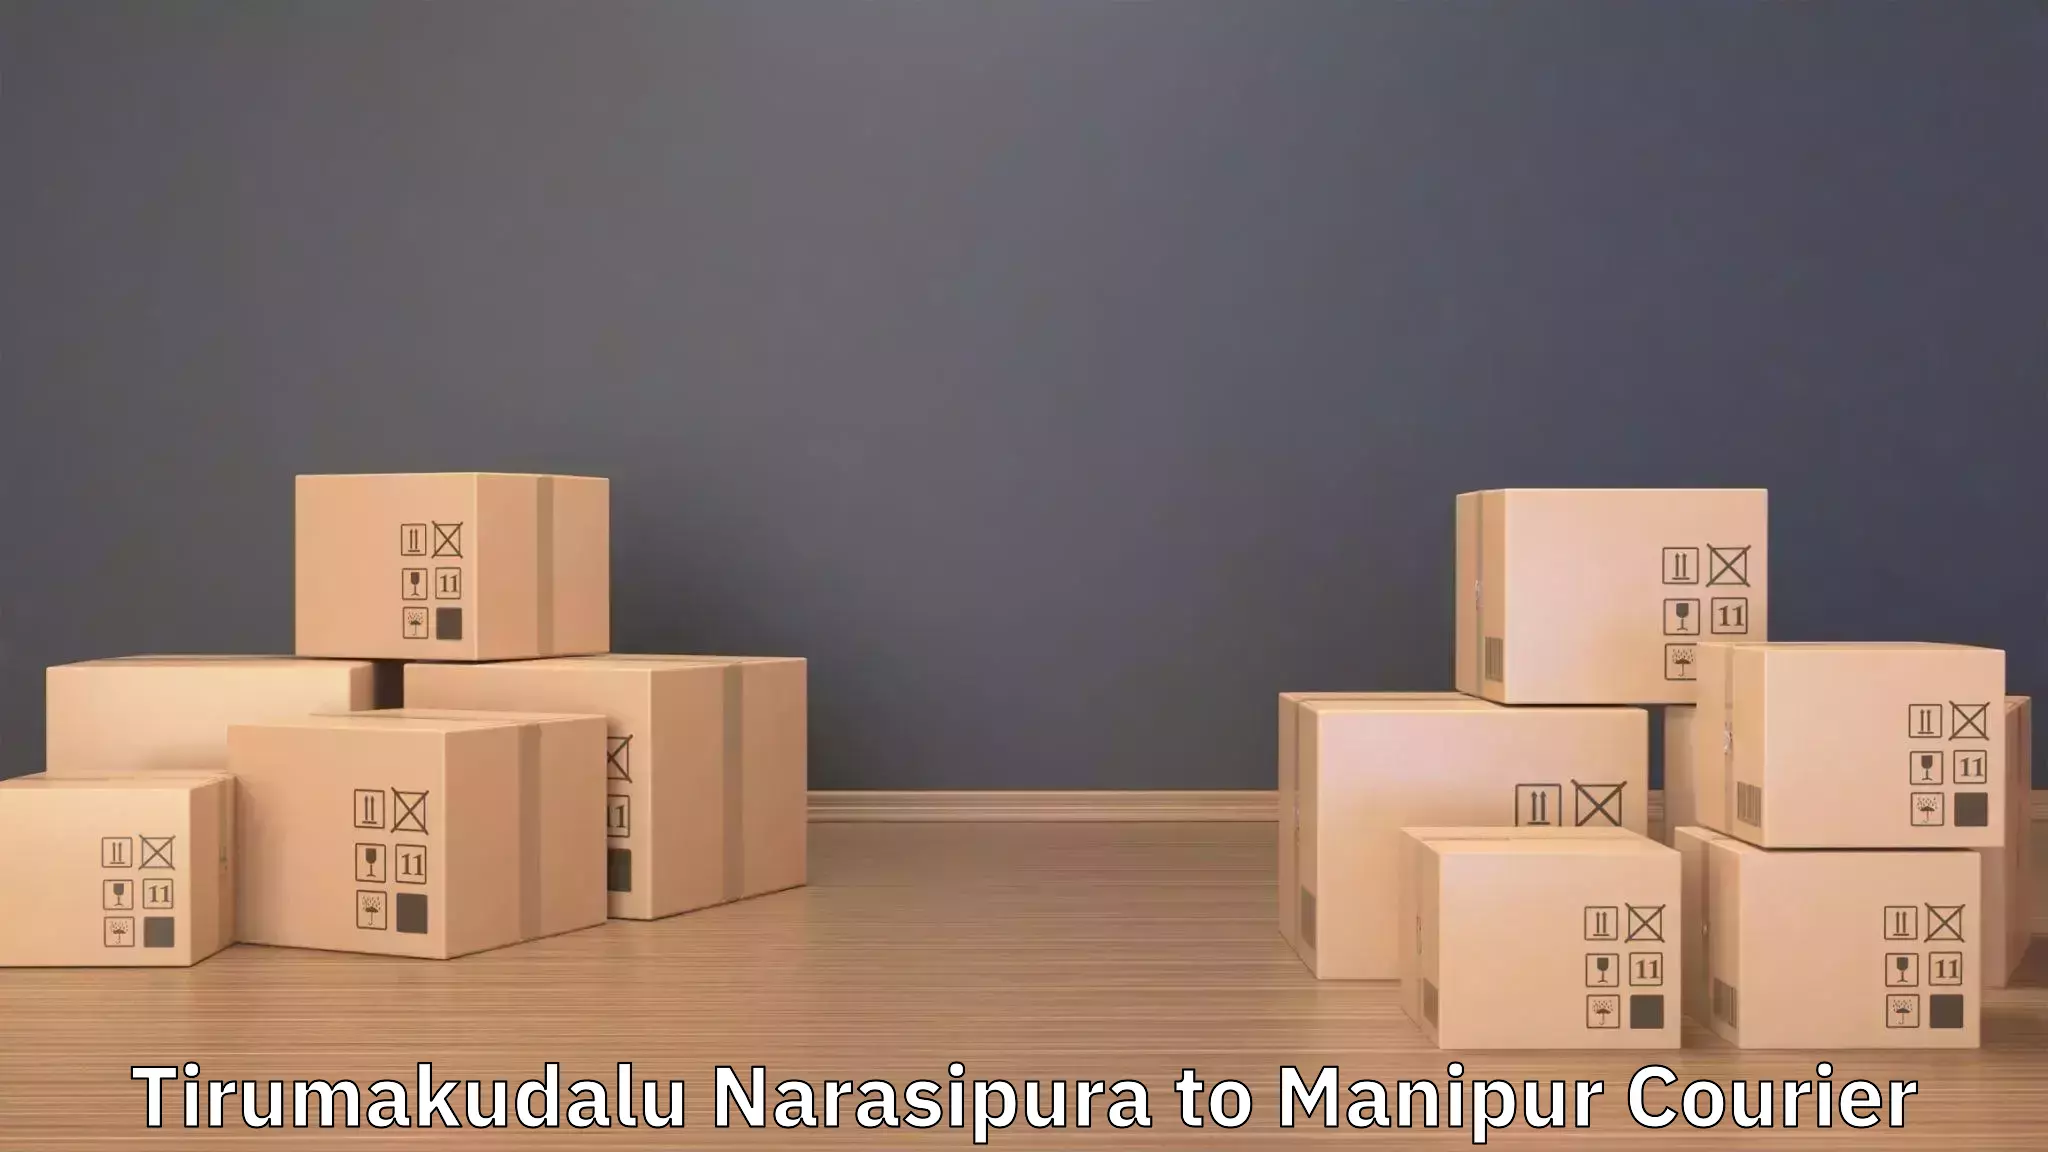 Skilled furniture movers Tirumakudalu Narasipura to Moirang